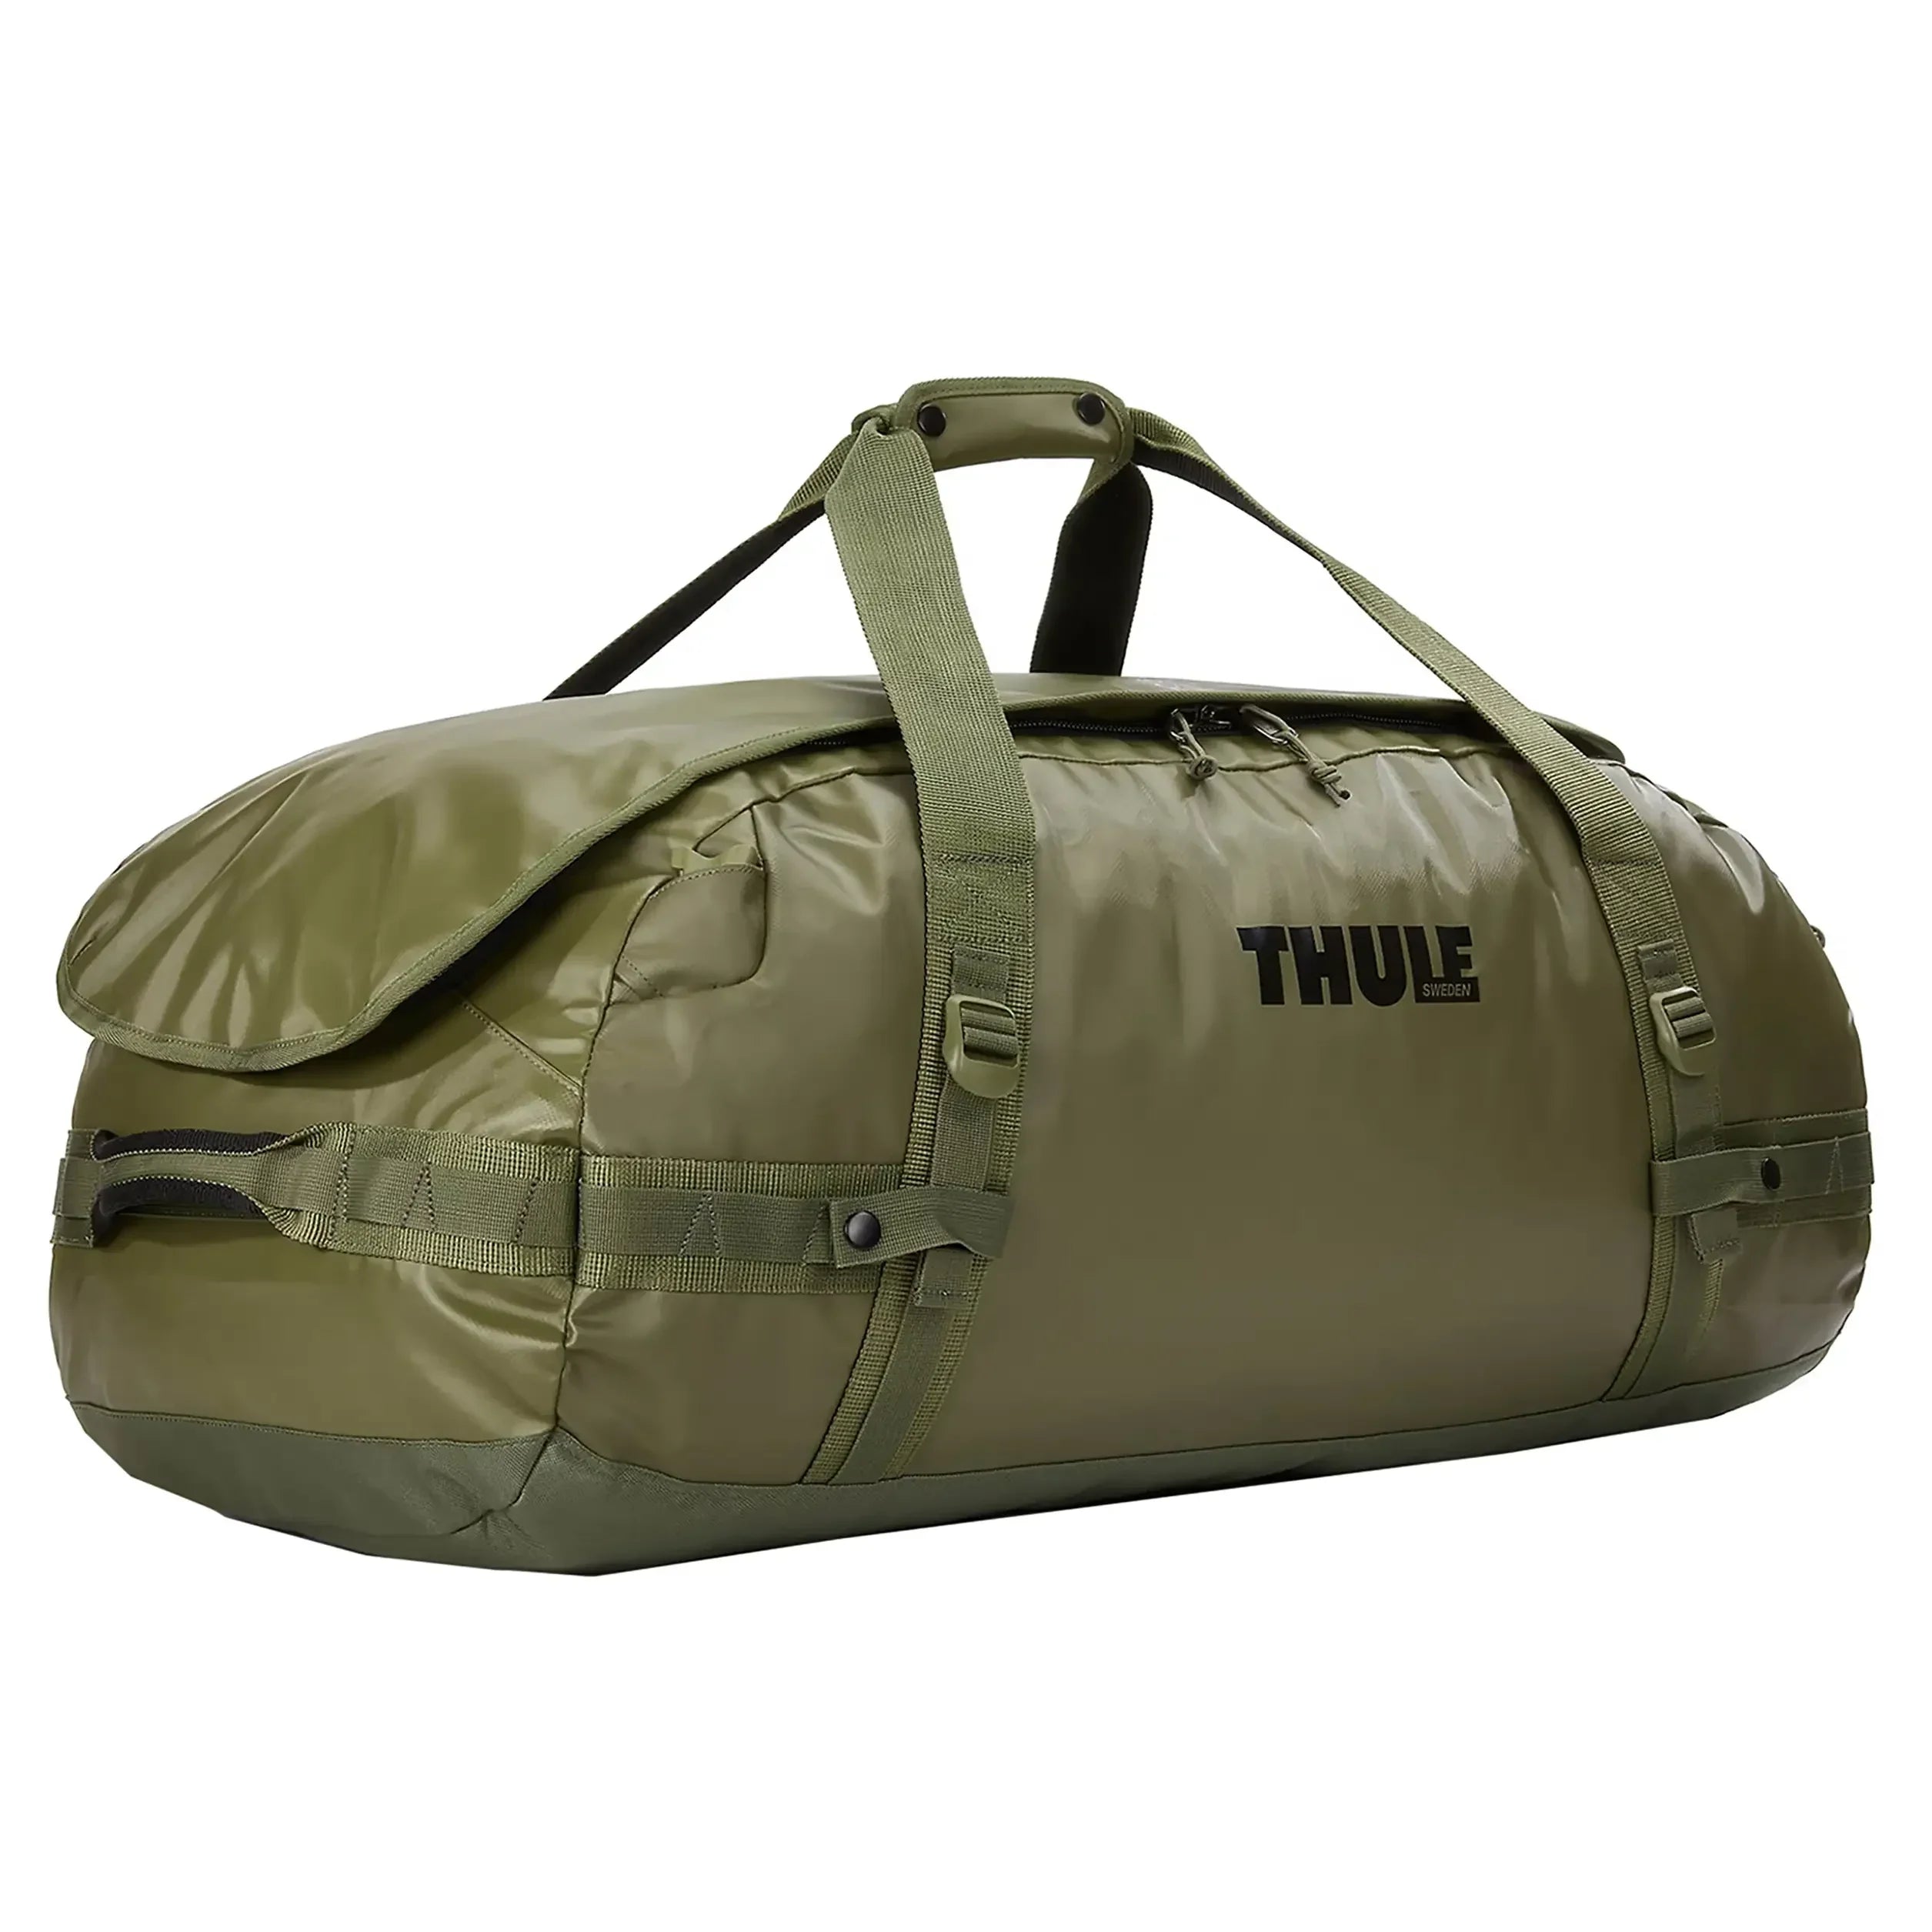 Thule Travel Chasm Travel Bag 86 cm - Olivine